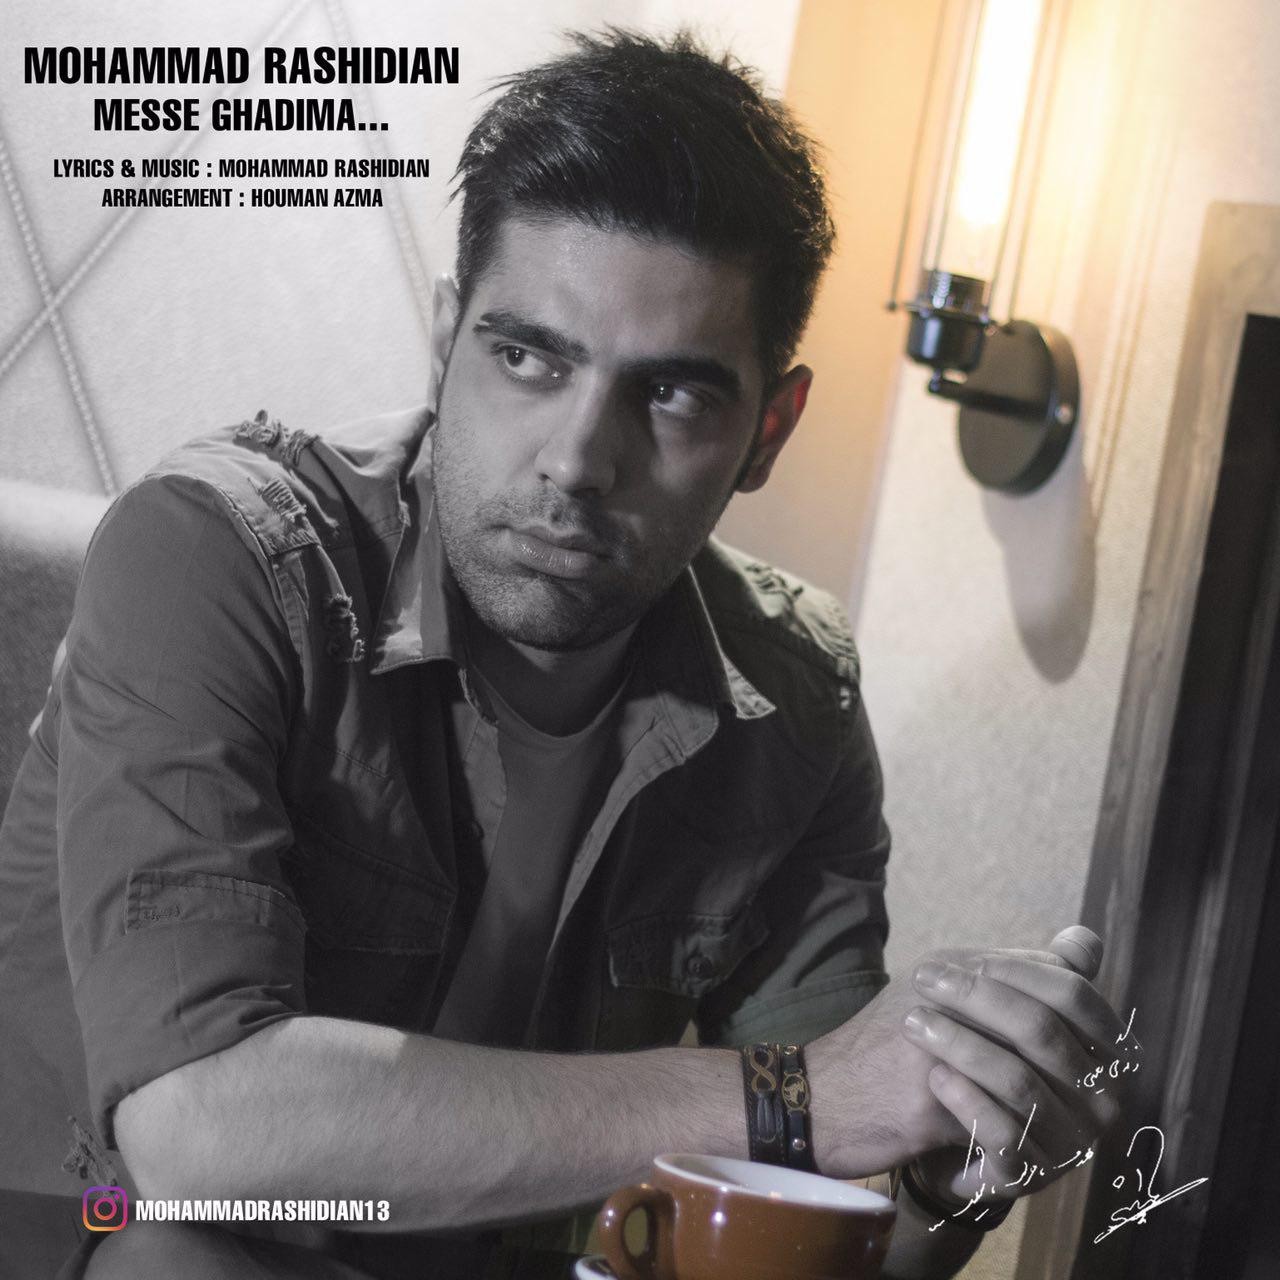  دانلود آهنگ جدید محمد رشیدیان - مثه قدیما | Download New Music By Mohammad Rashidian - Messe Ghadima